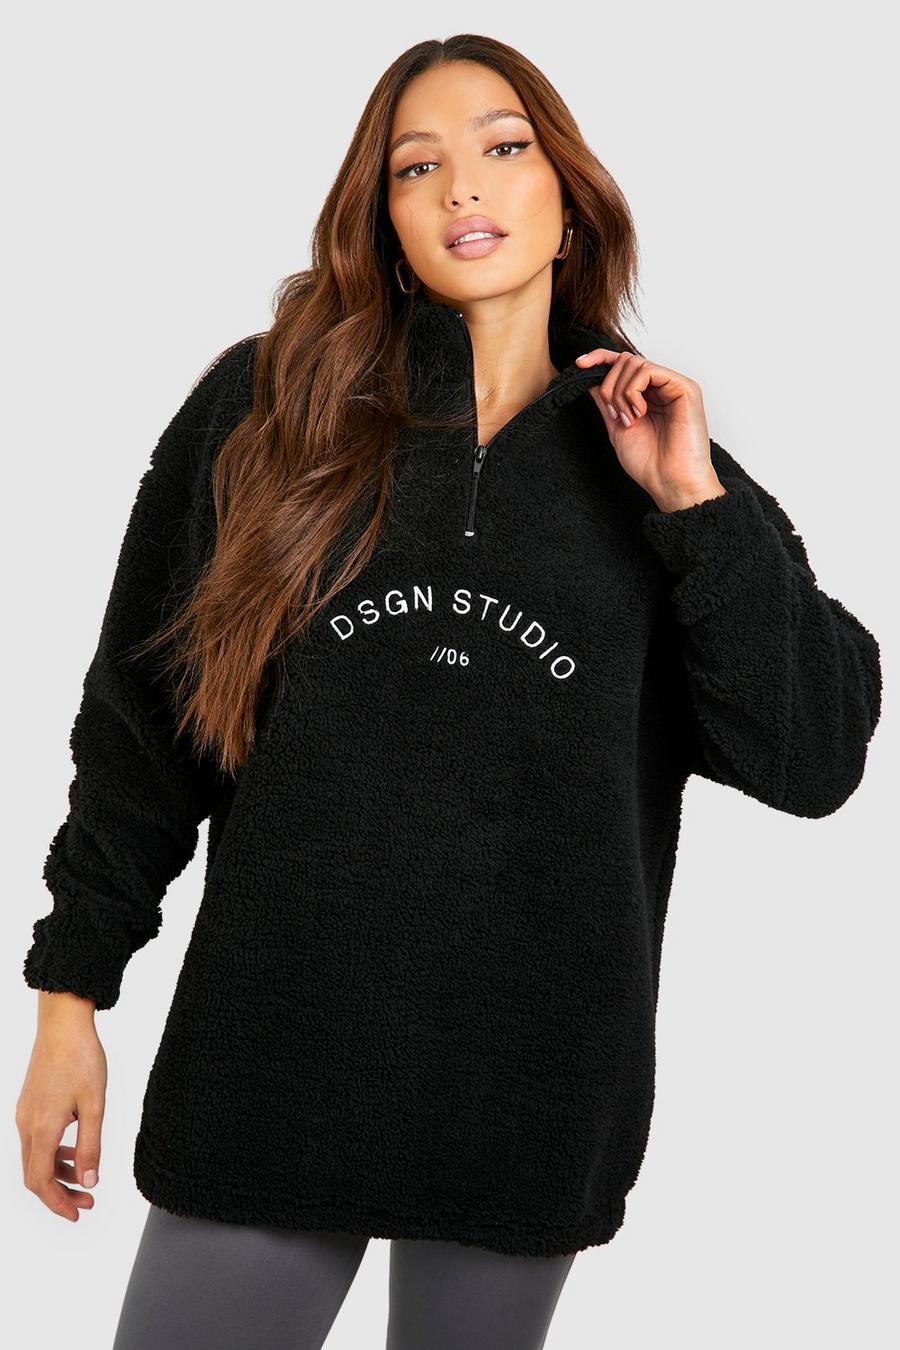 Tall Borg-Sweatshirt mit Dsgn Studio Premium Stickerei und halbem Reißverschluss, Black